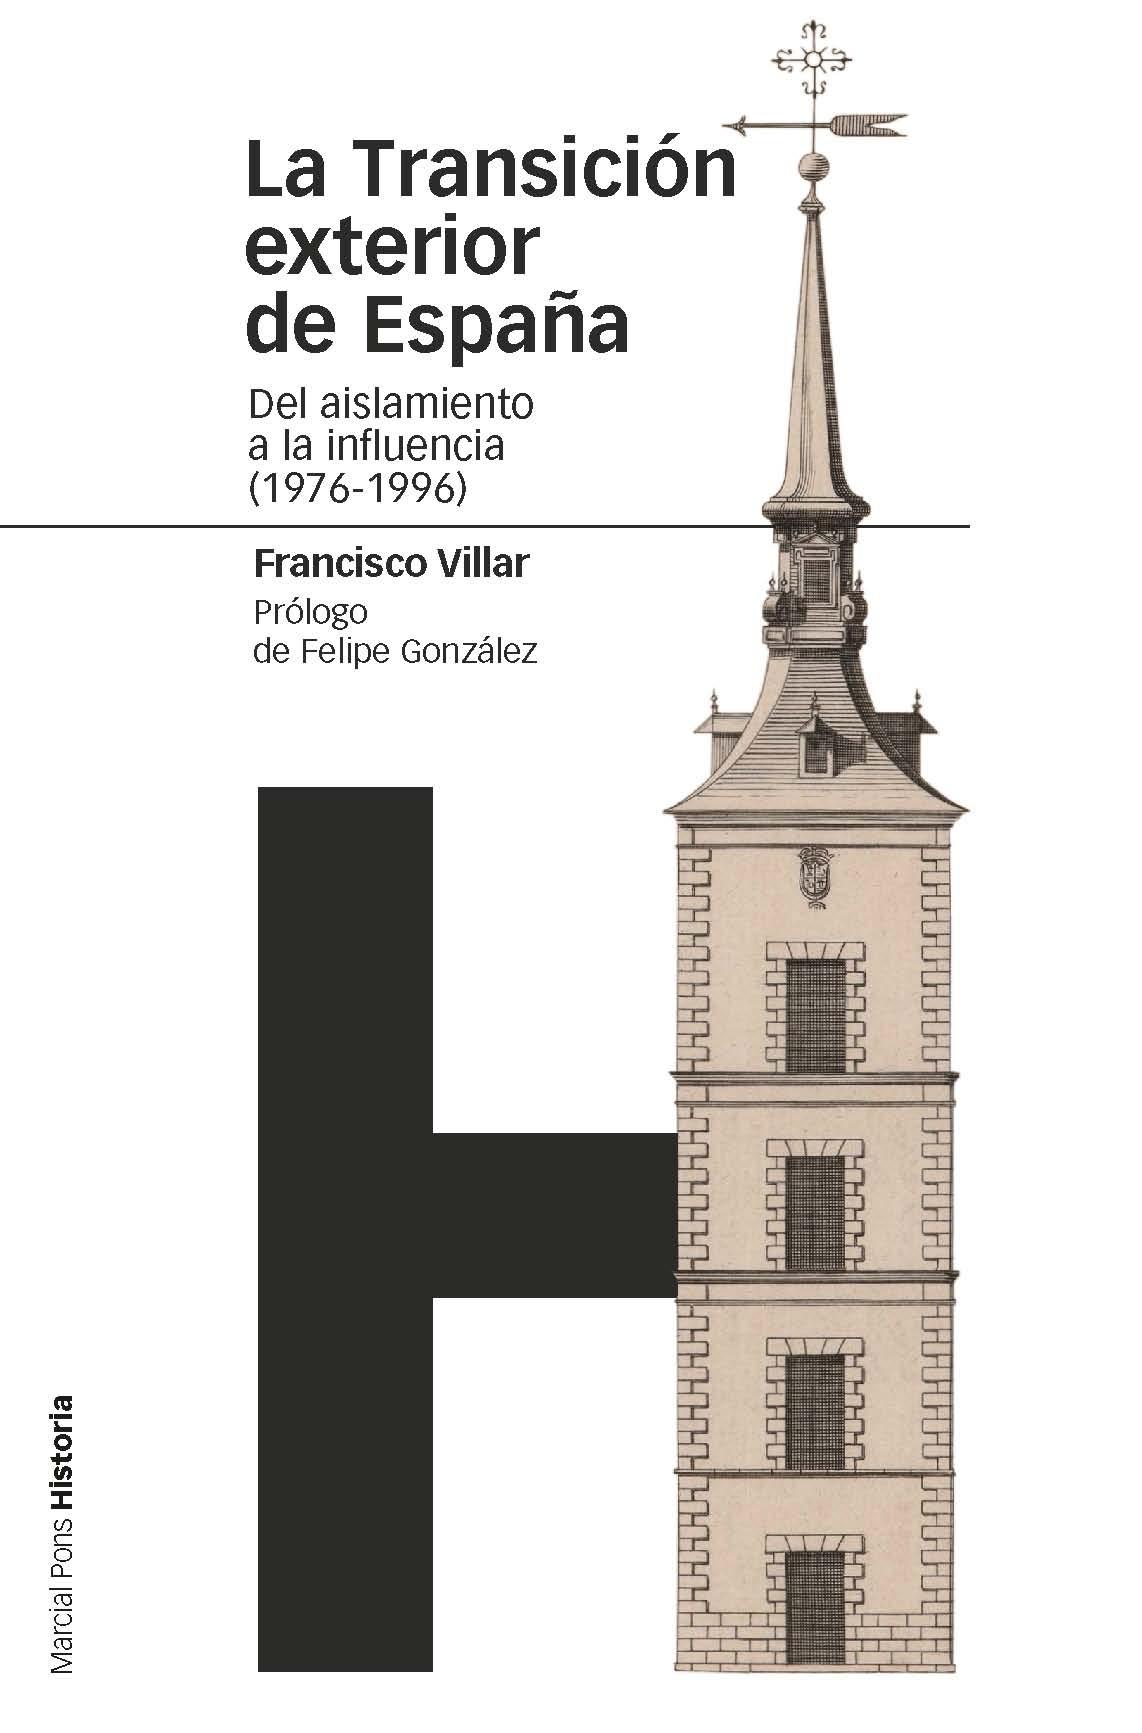 La transición exterior de España "Del aislamiento a la influencia (1976-1996)"